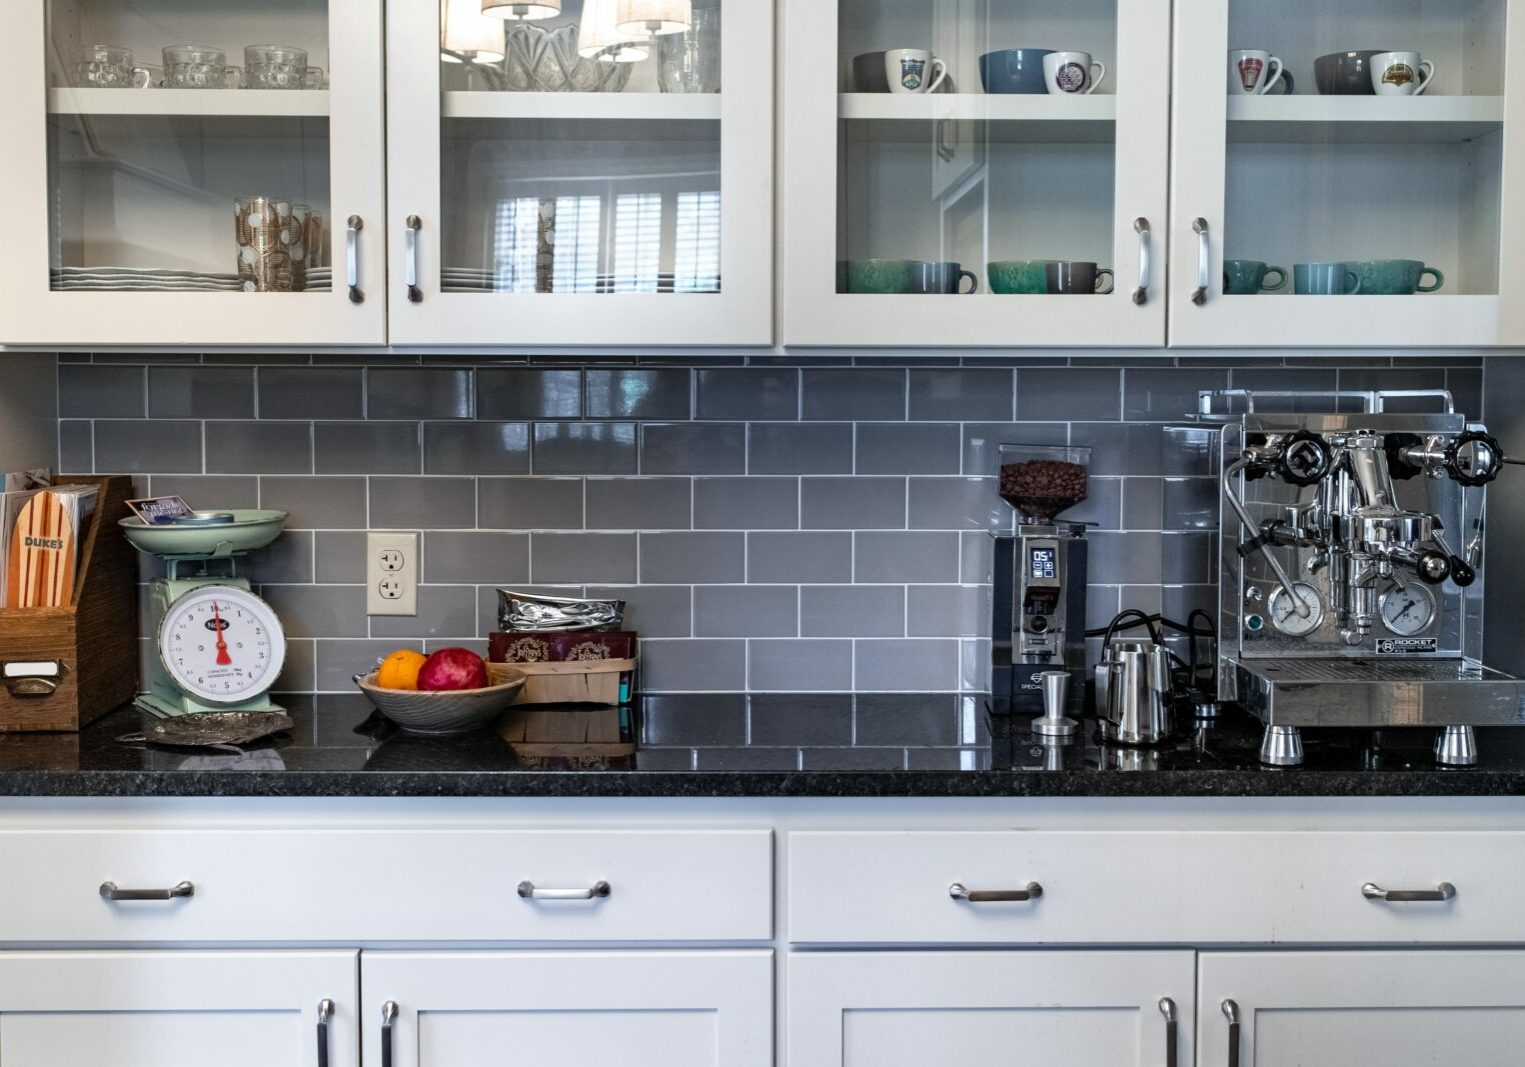 Tile backsplash in kitchen | Carpetland USA